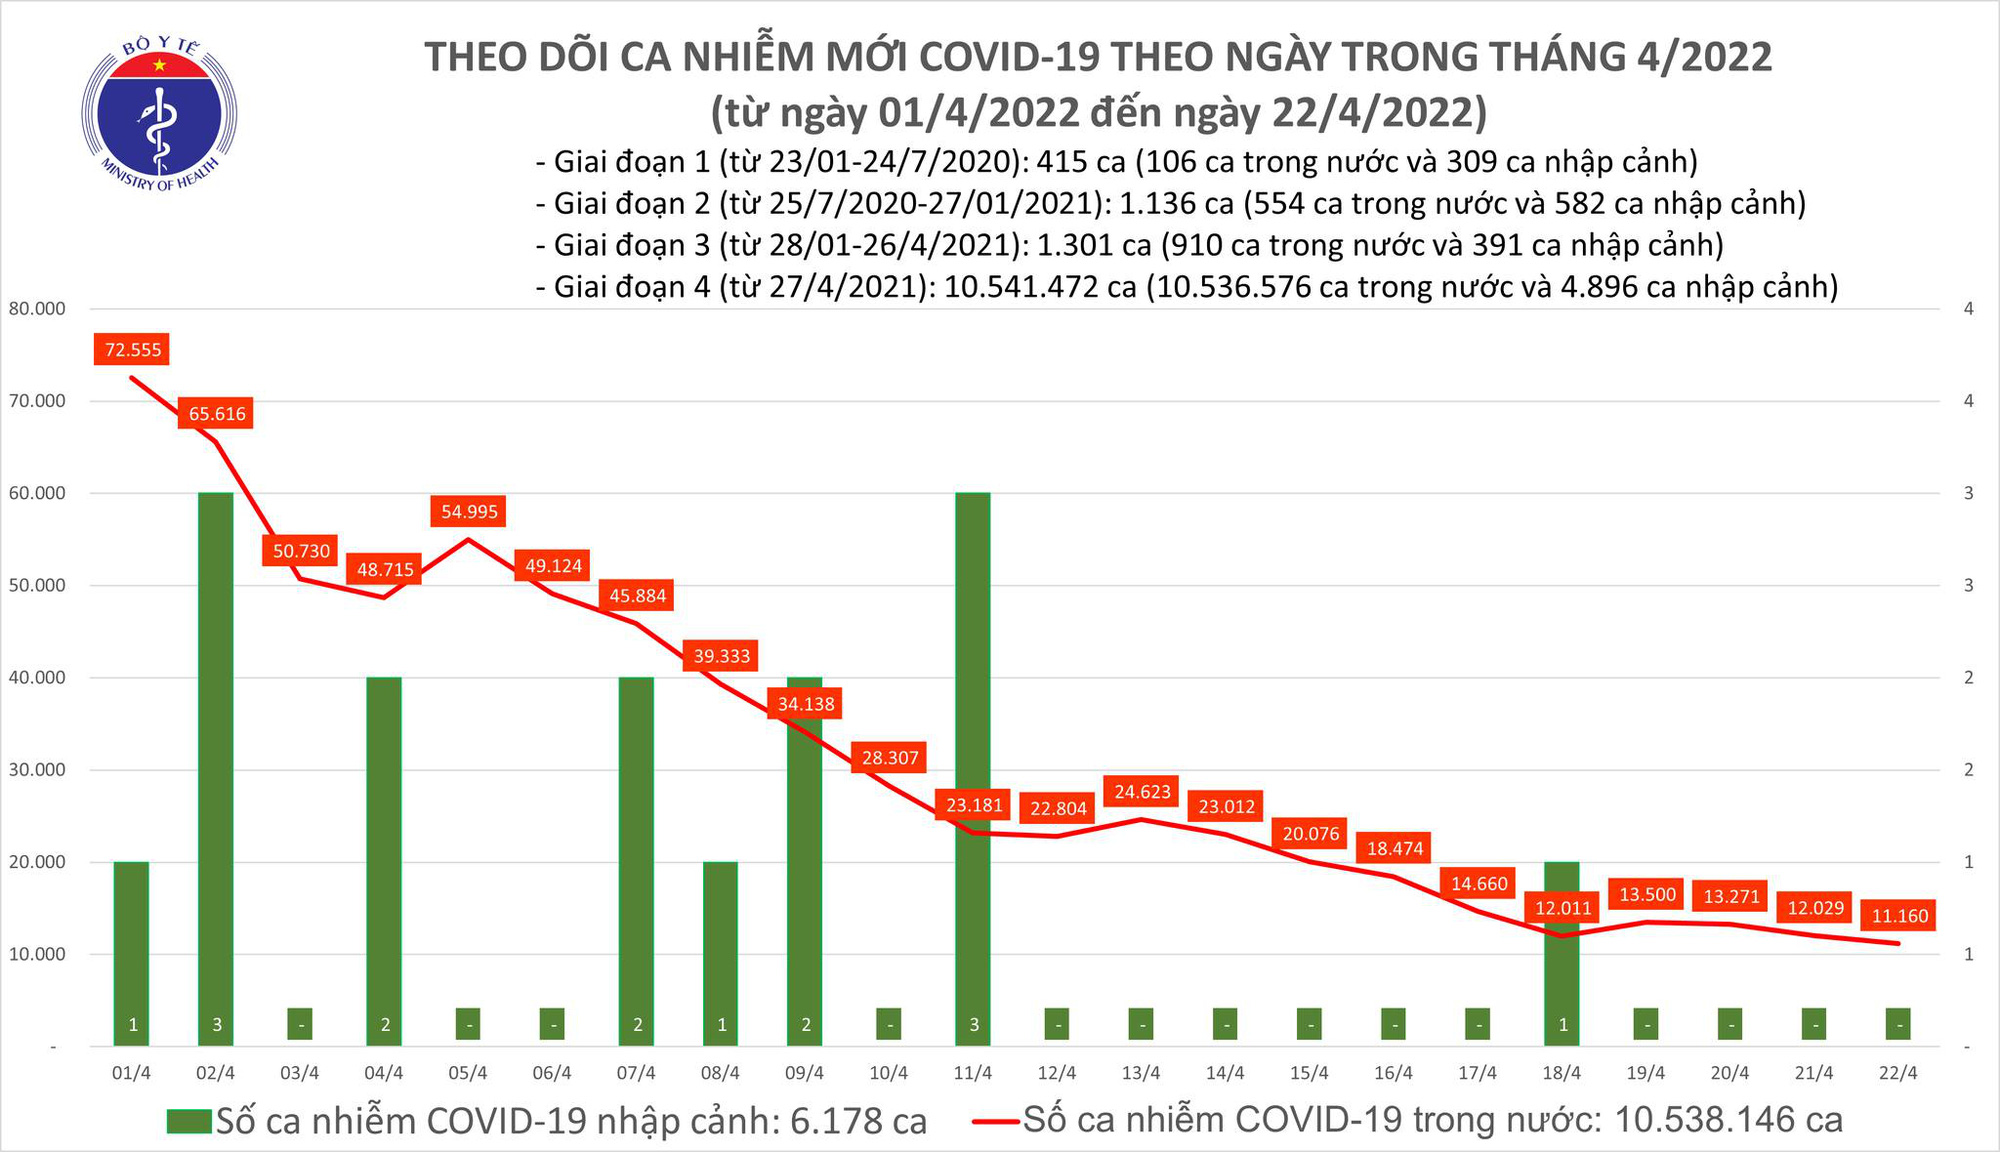 Dịch Covid-19 hôm nay: Thêm 11.160 ca nhiễm mới, số F0 ở Hà Nội và TP HCM giảm - Ảnh 1.